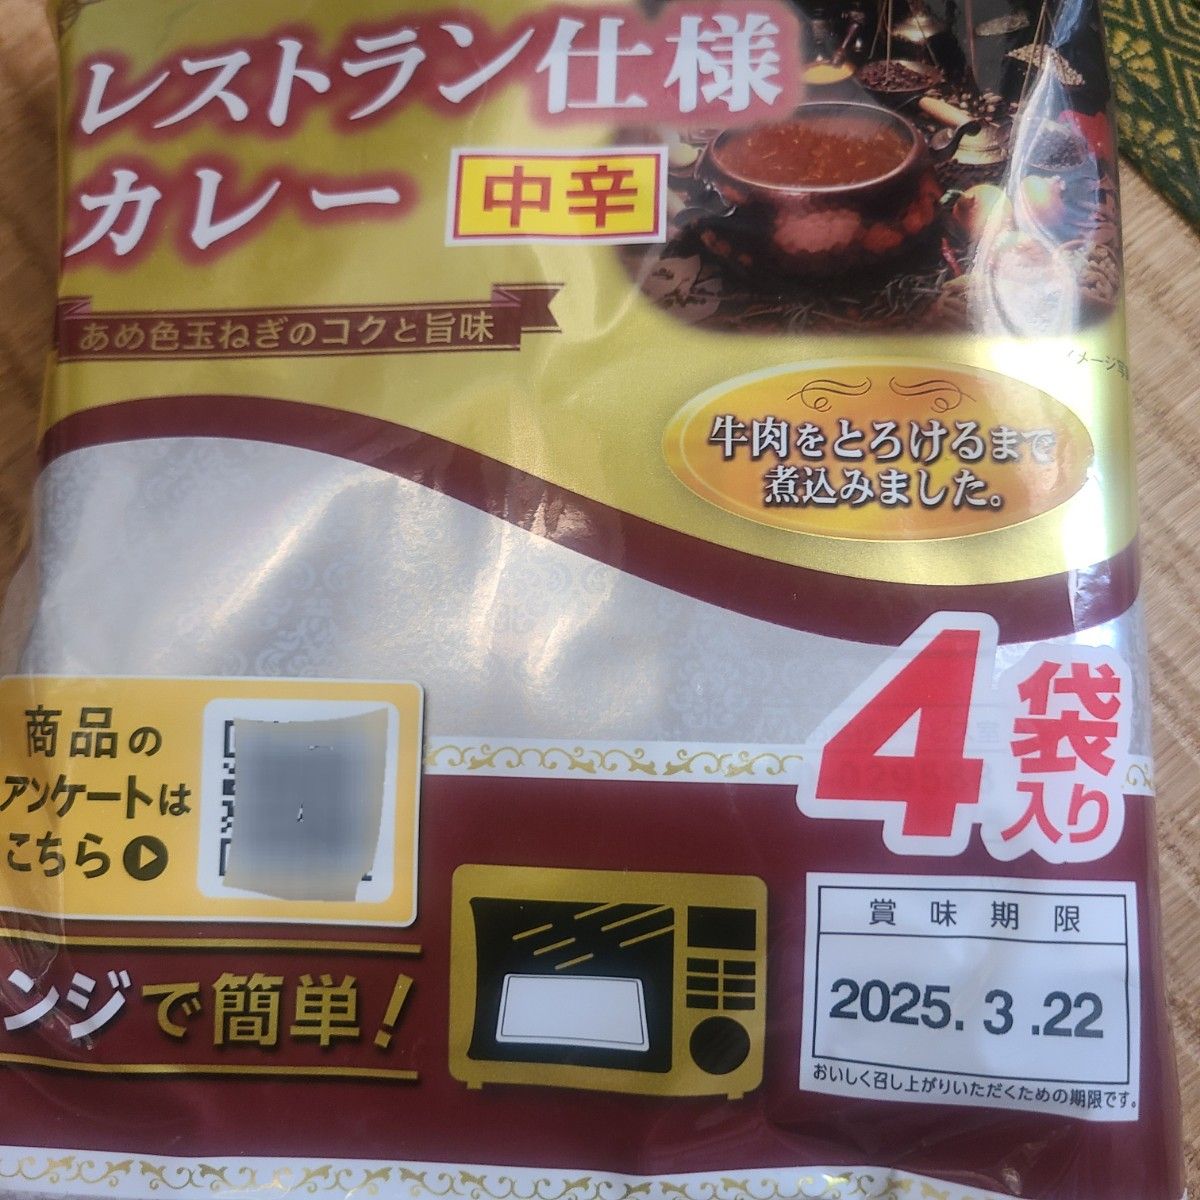 レストラン仕様カレー中辛8食セット レトルトカレー 日本ハム